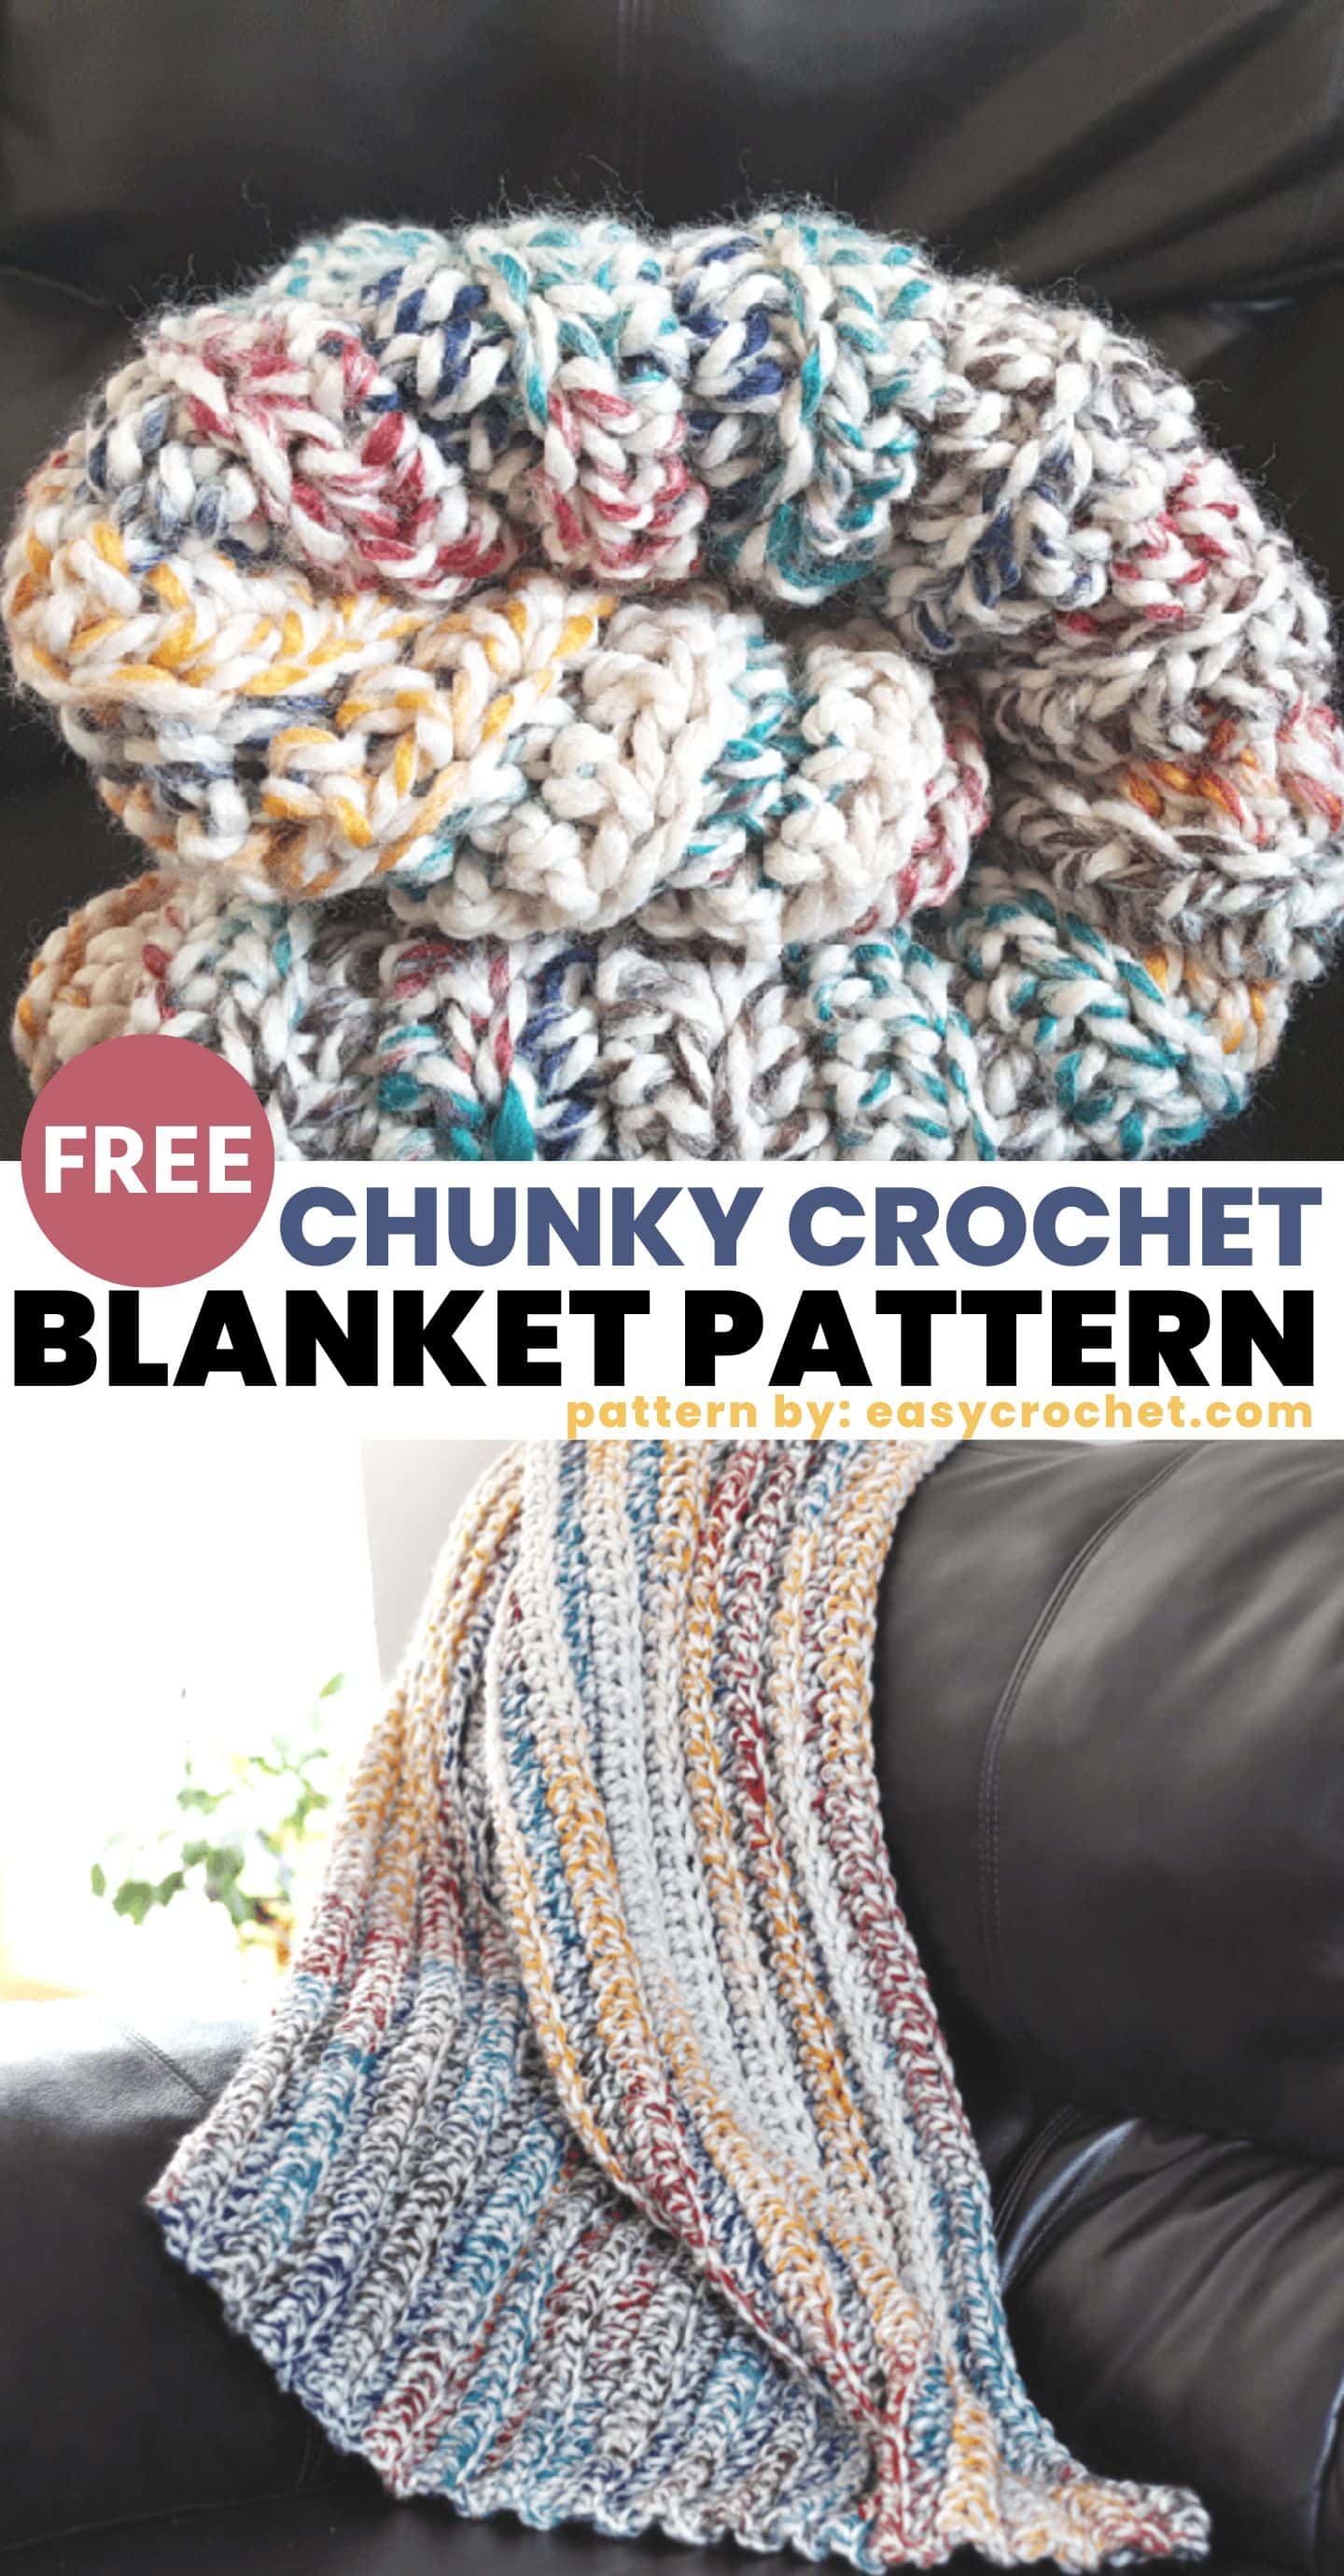 Super bulky crochet blanket pattern